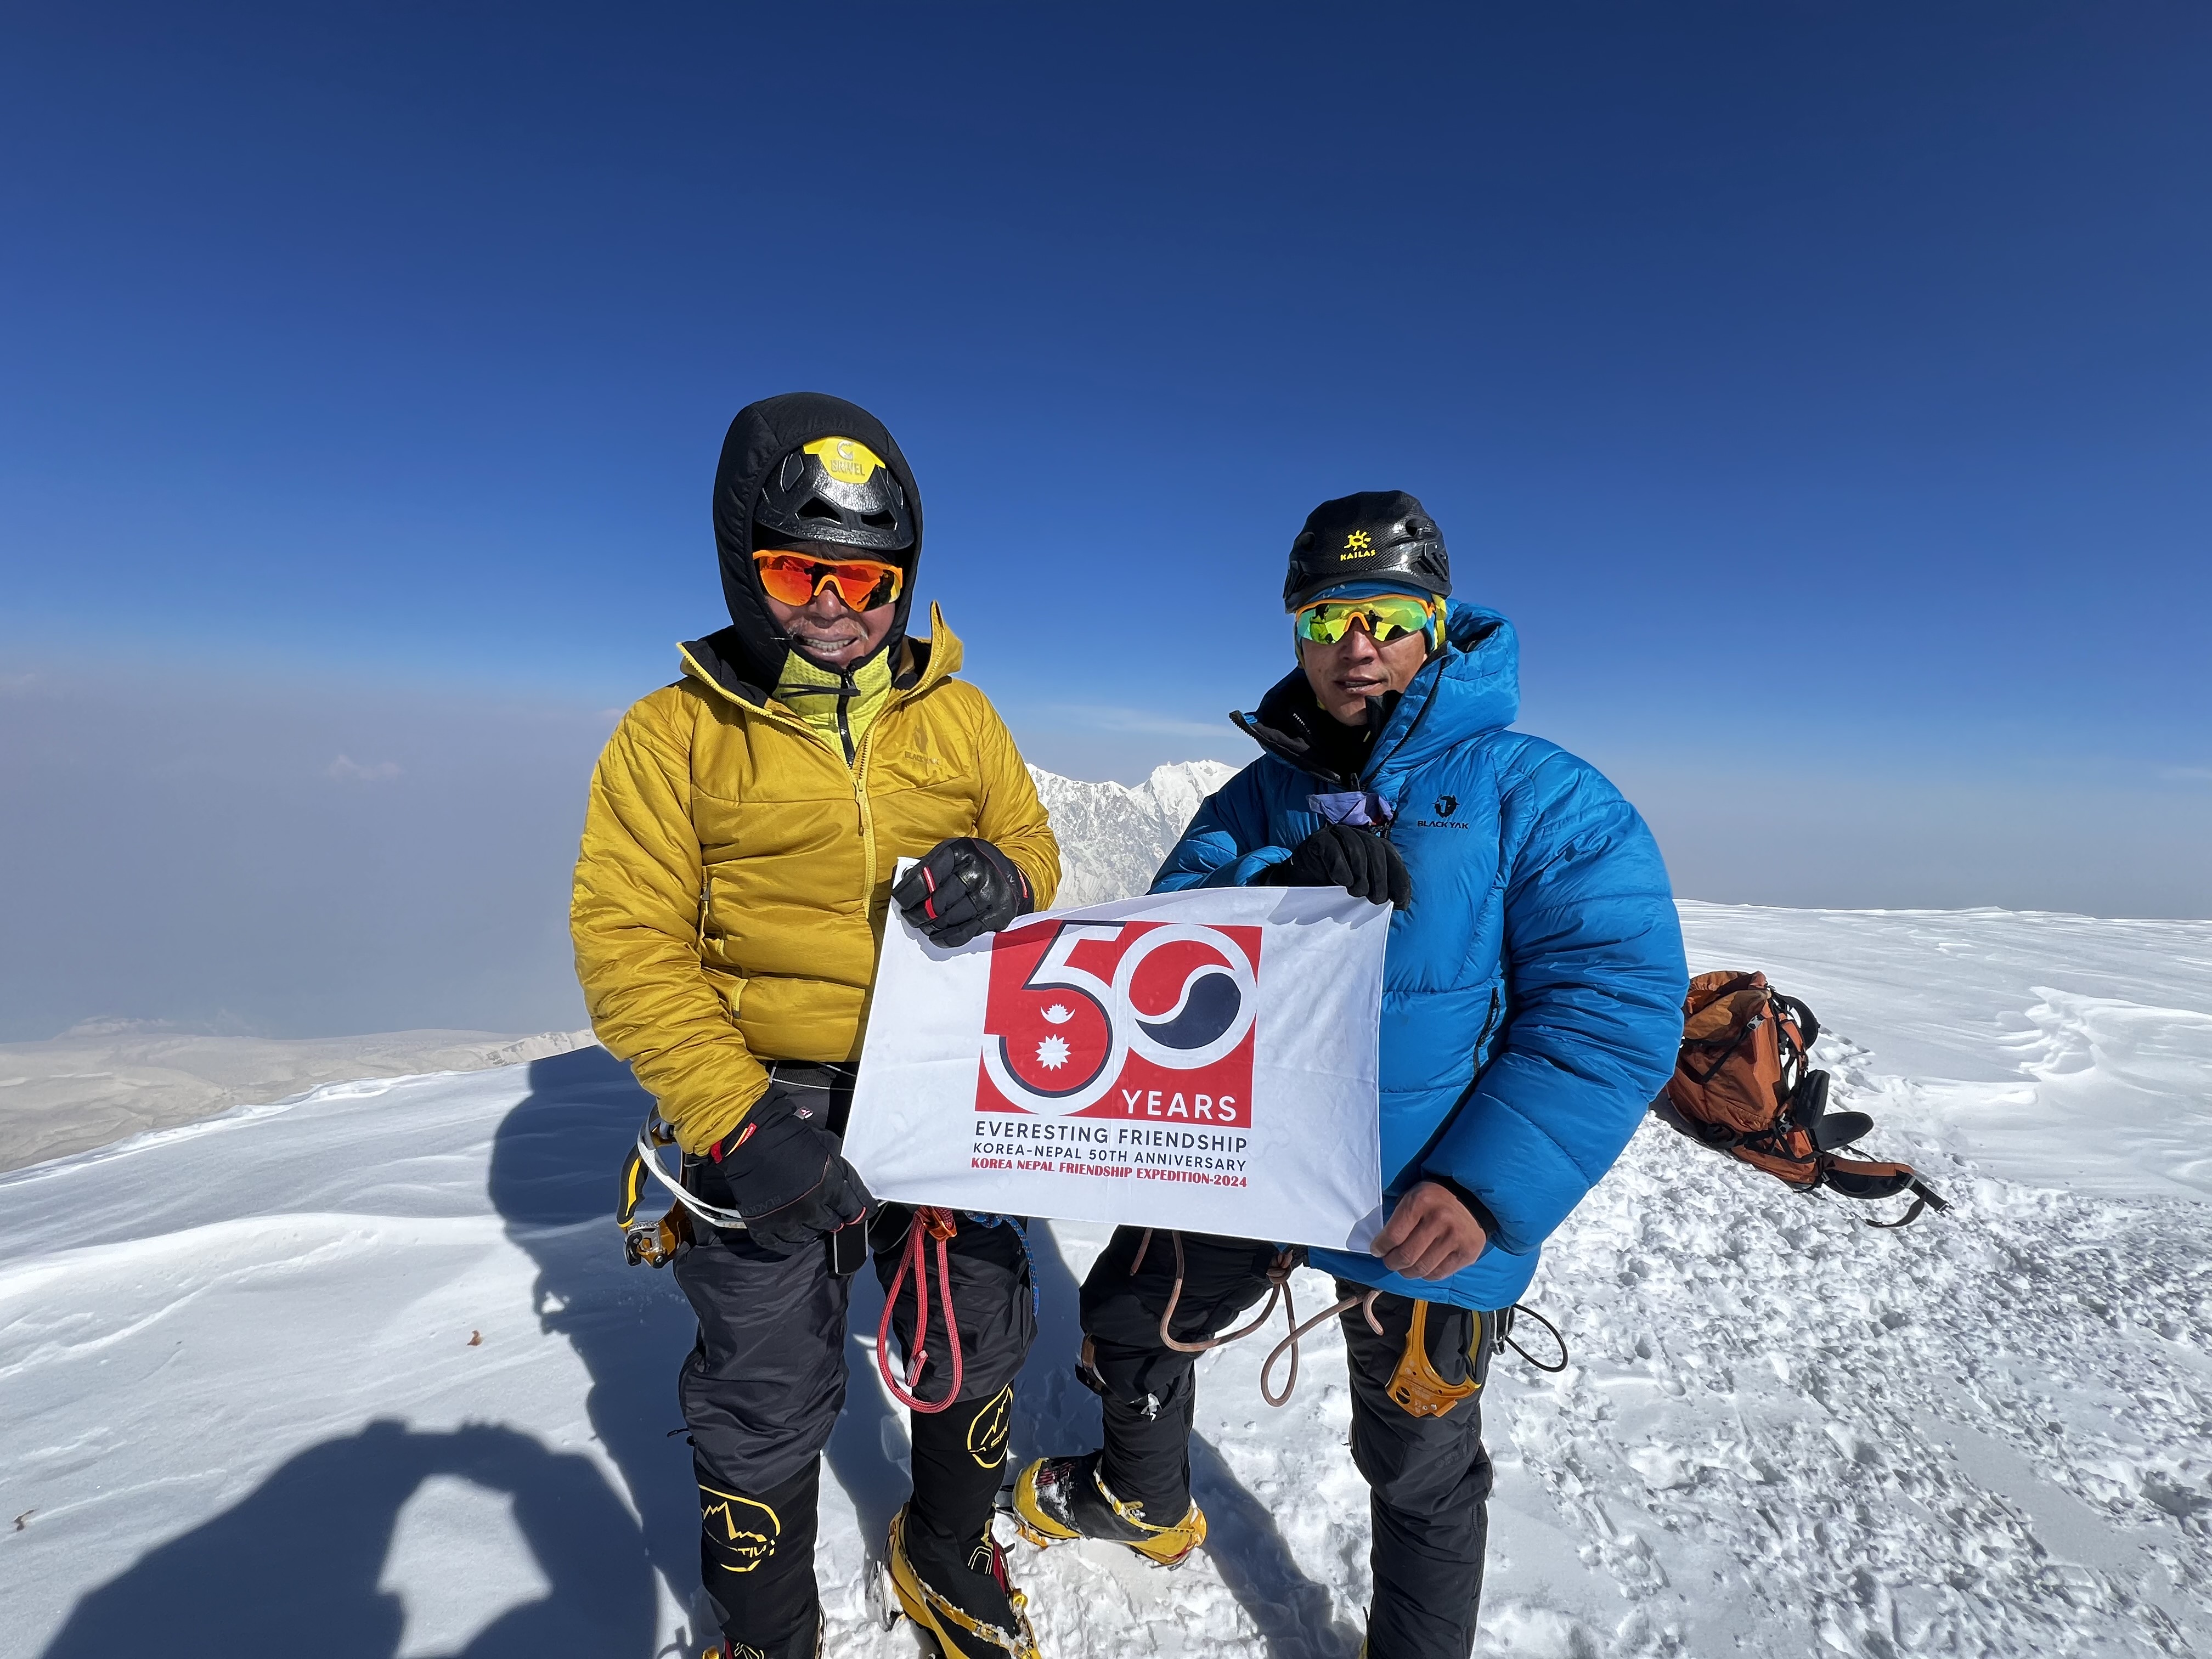 한-네팔 수교 50주년 기념 양국 우호 등반대 Jugal 산 등정 성공 영상